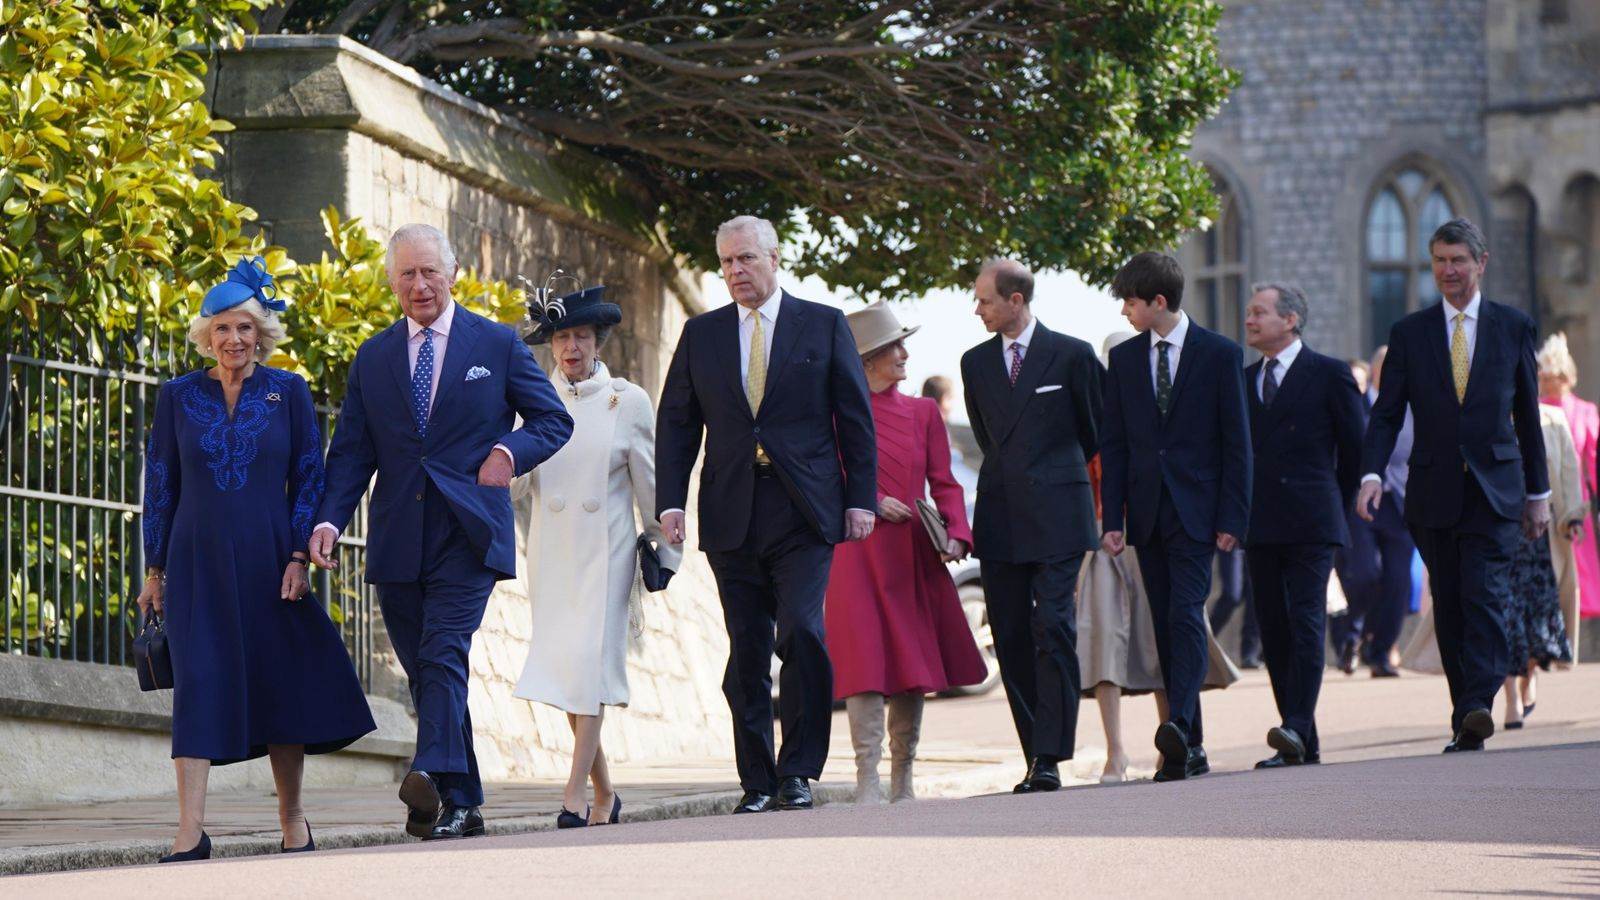   الملك تشارلز الثالث وقرينته الملكة يتقدمان أفراد العائلة المالكة